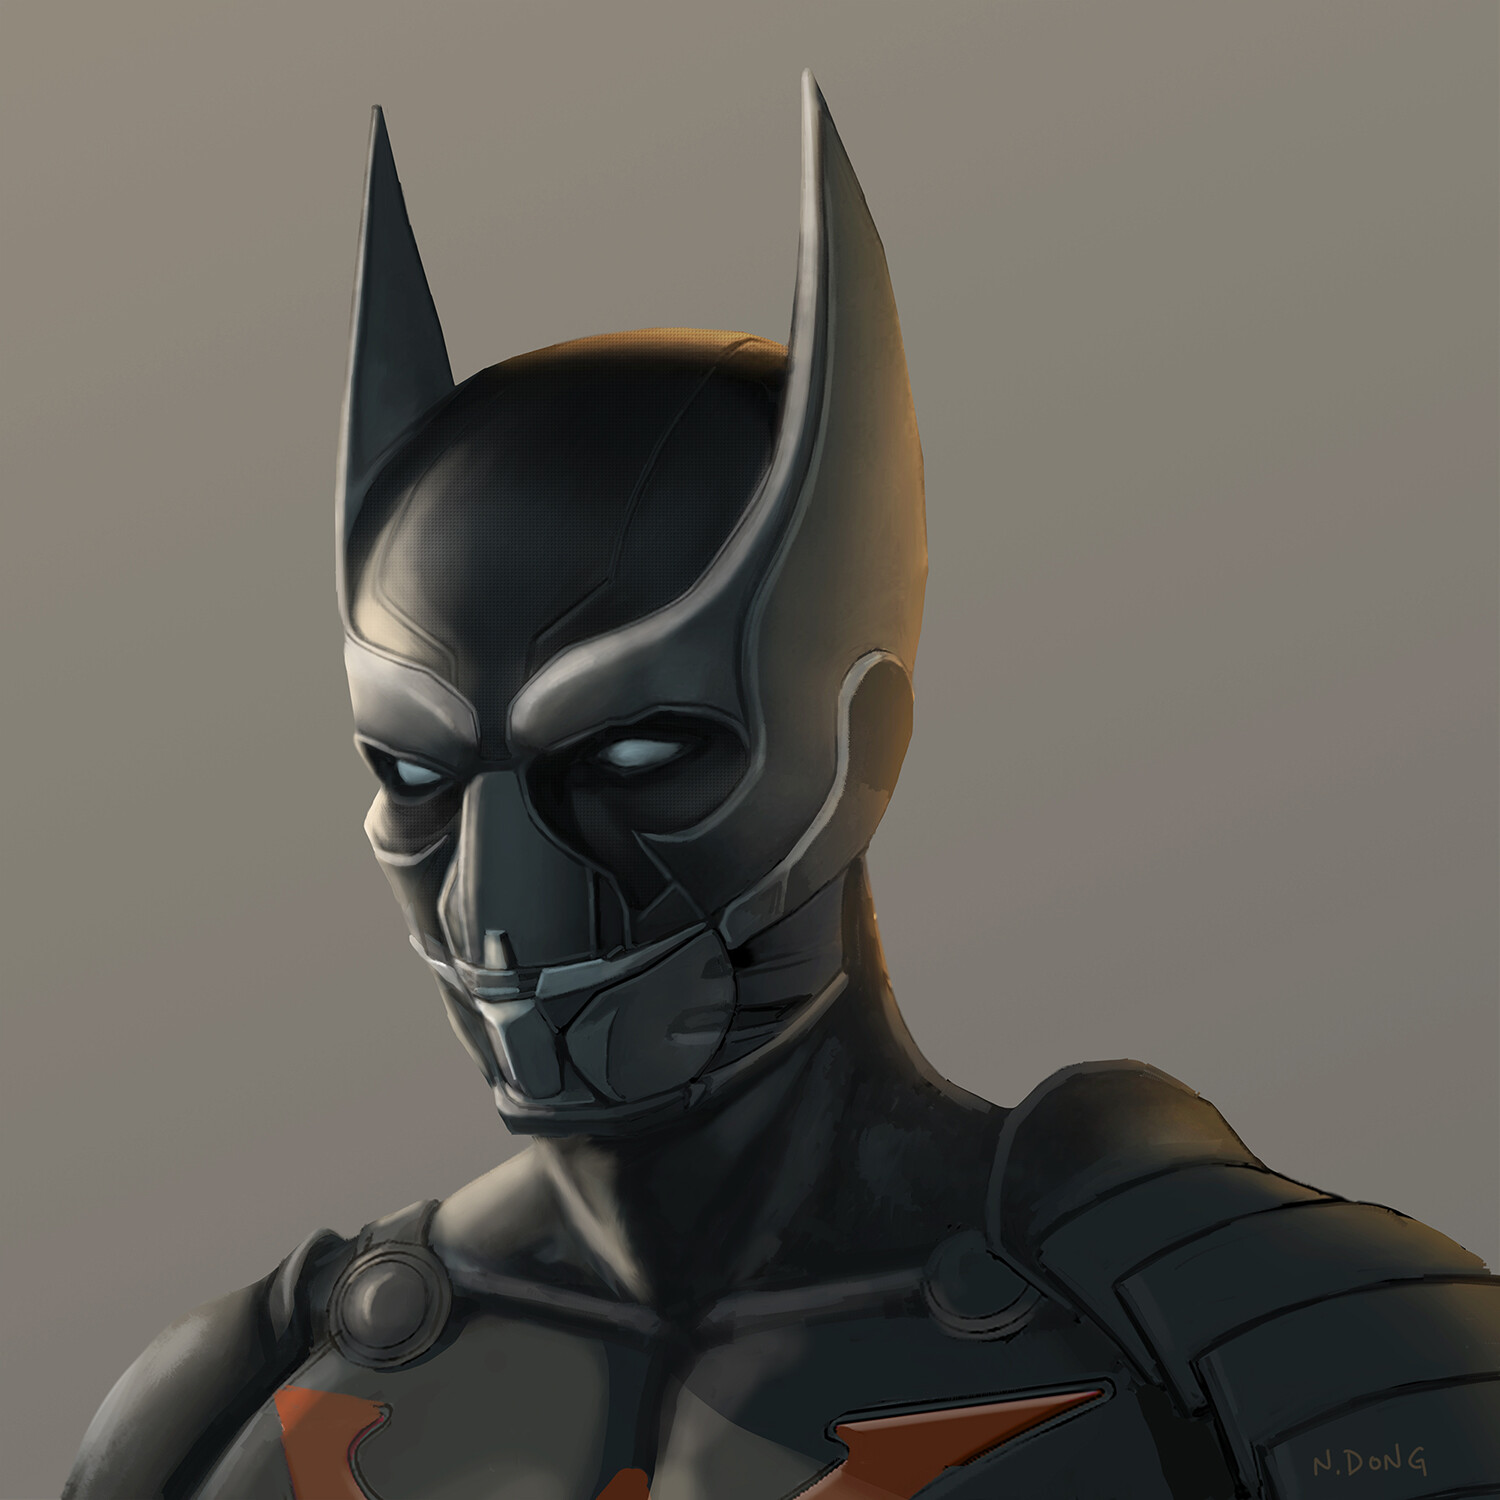 Batman mask designed for Batman Beyond as a live action film.